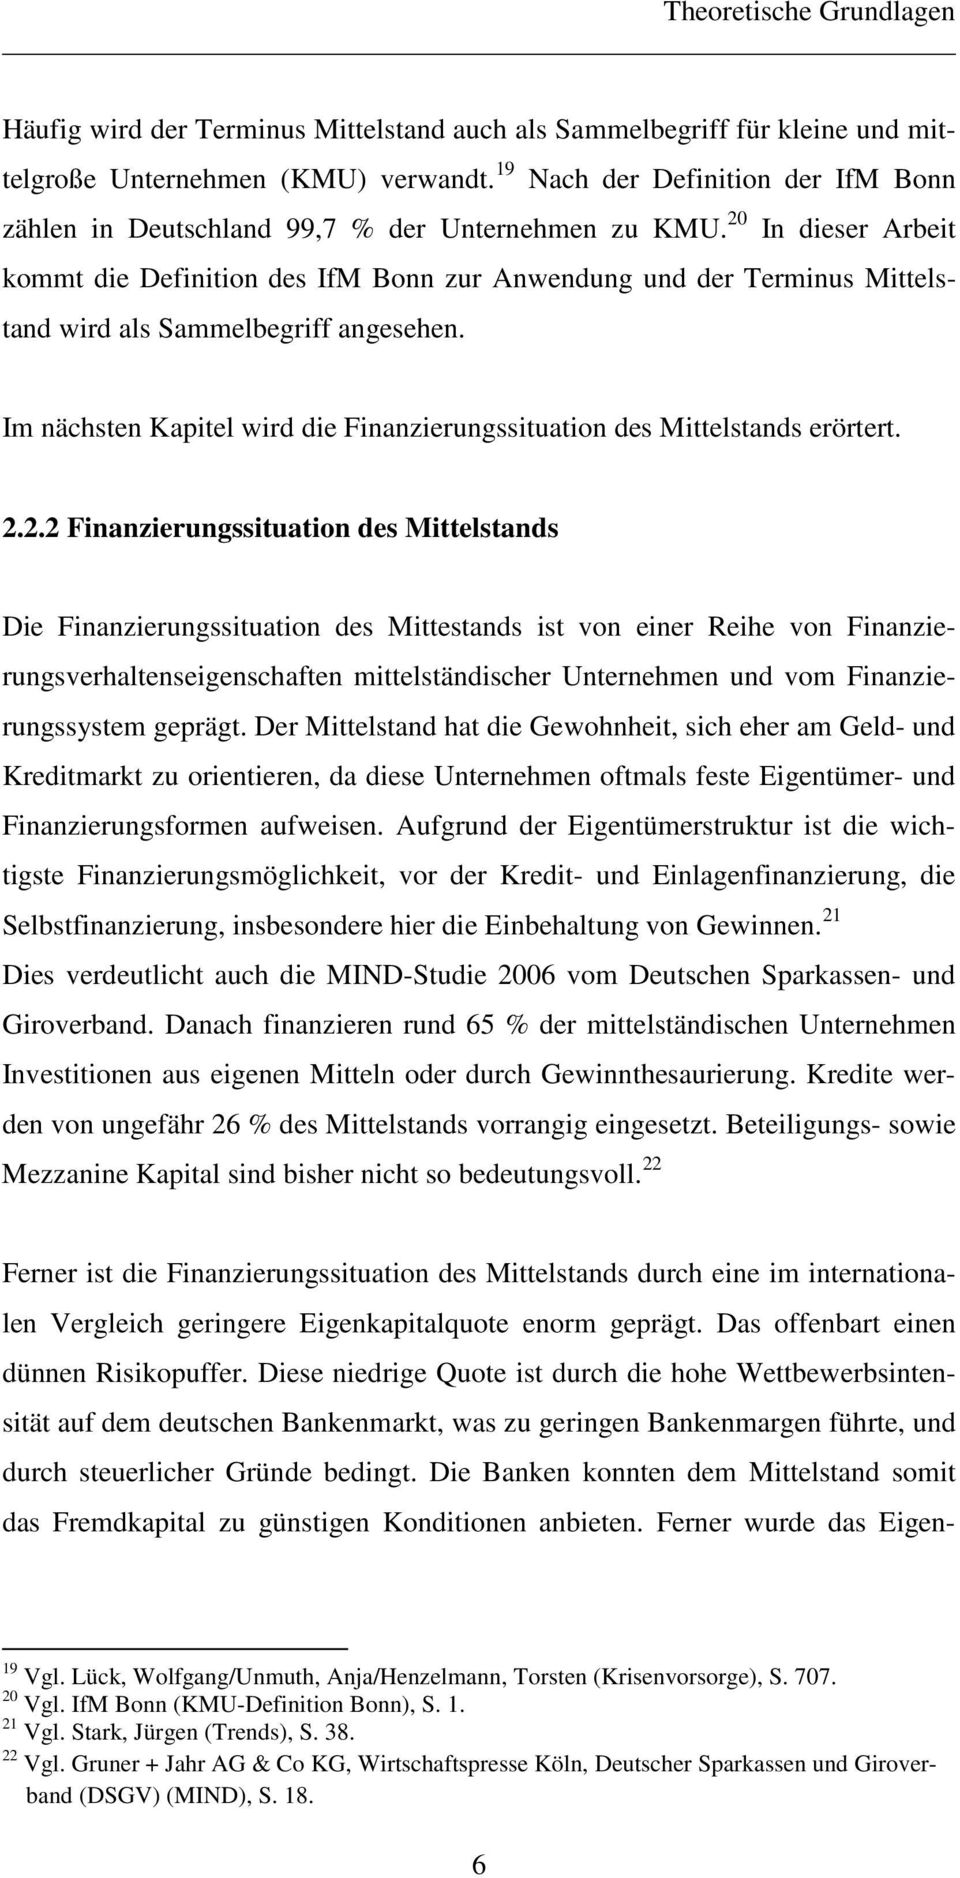 20 In dieser Arbeit kommt die Definition des IfM Bonn zur Anwendung und der Terminus Mittelstand wird als Sammelbegriff angesehen.